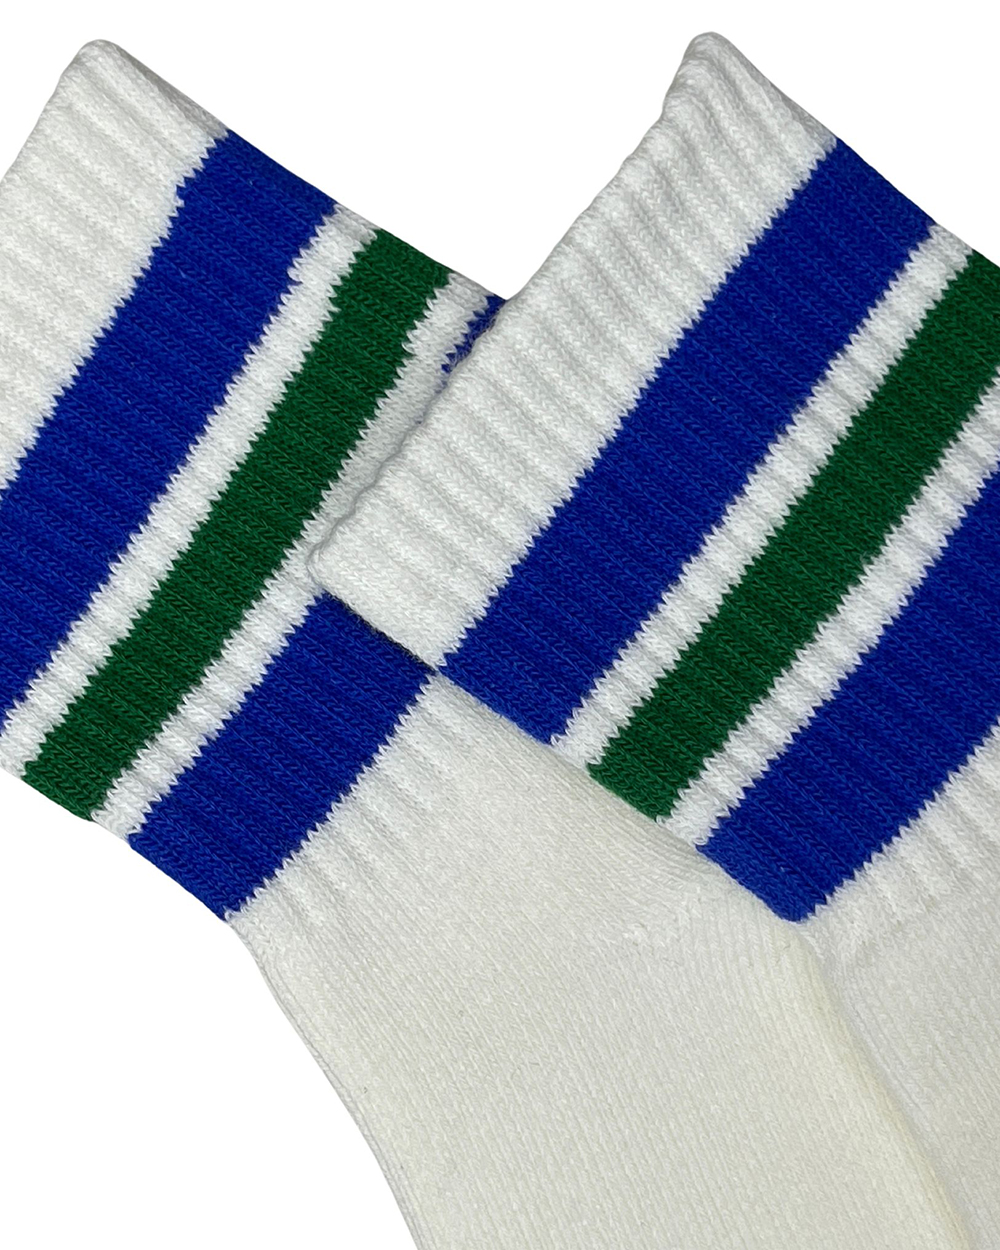 Varsity Socks - Crew Blue/White [4606]